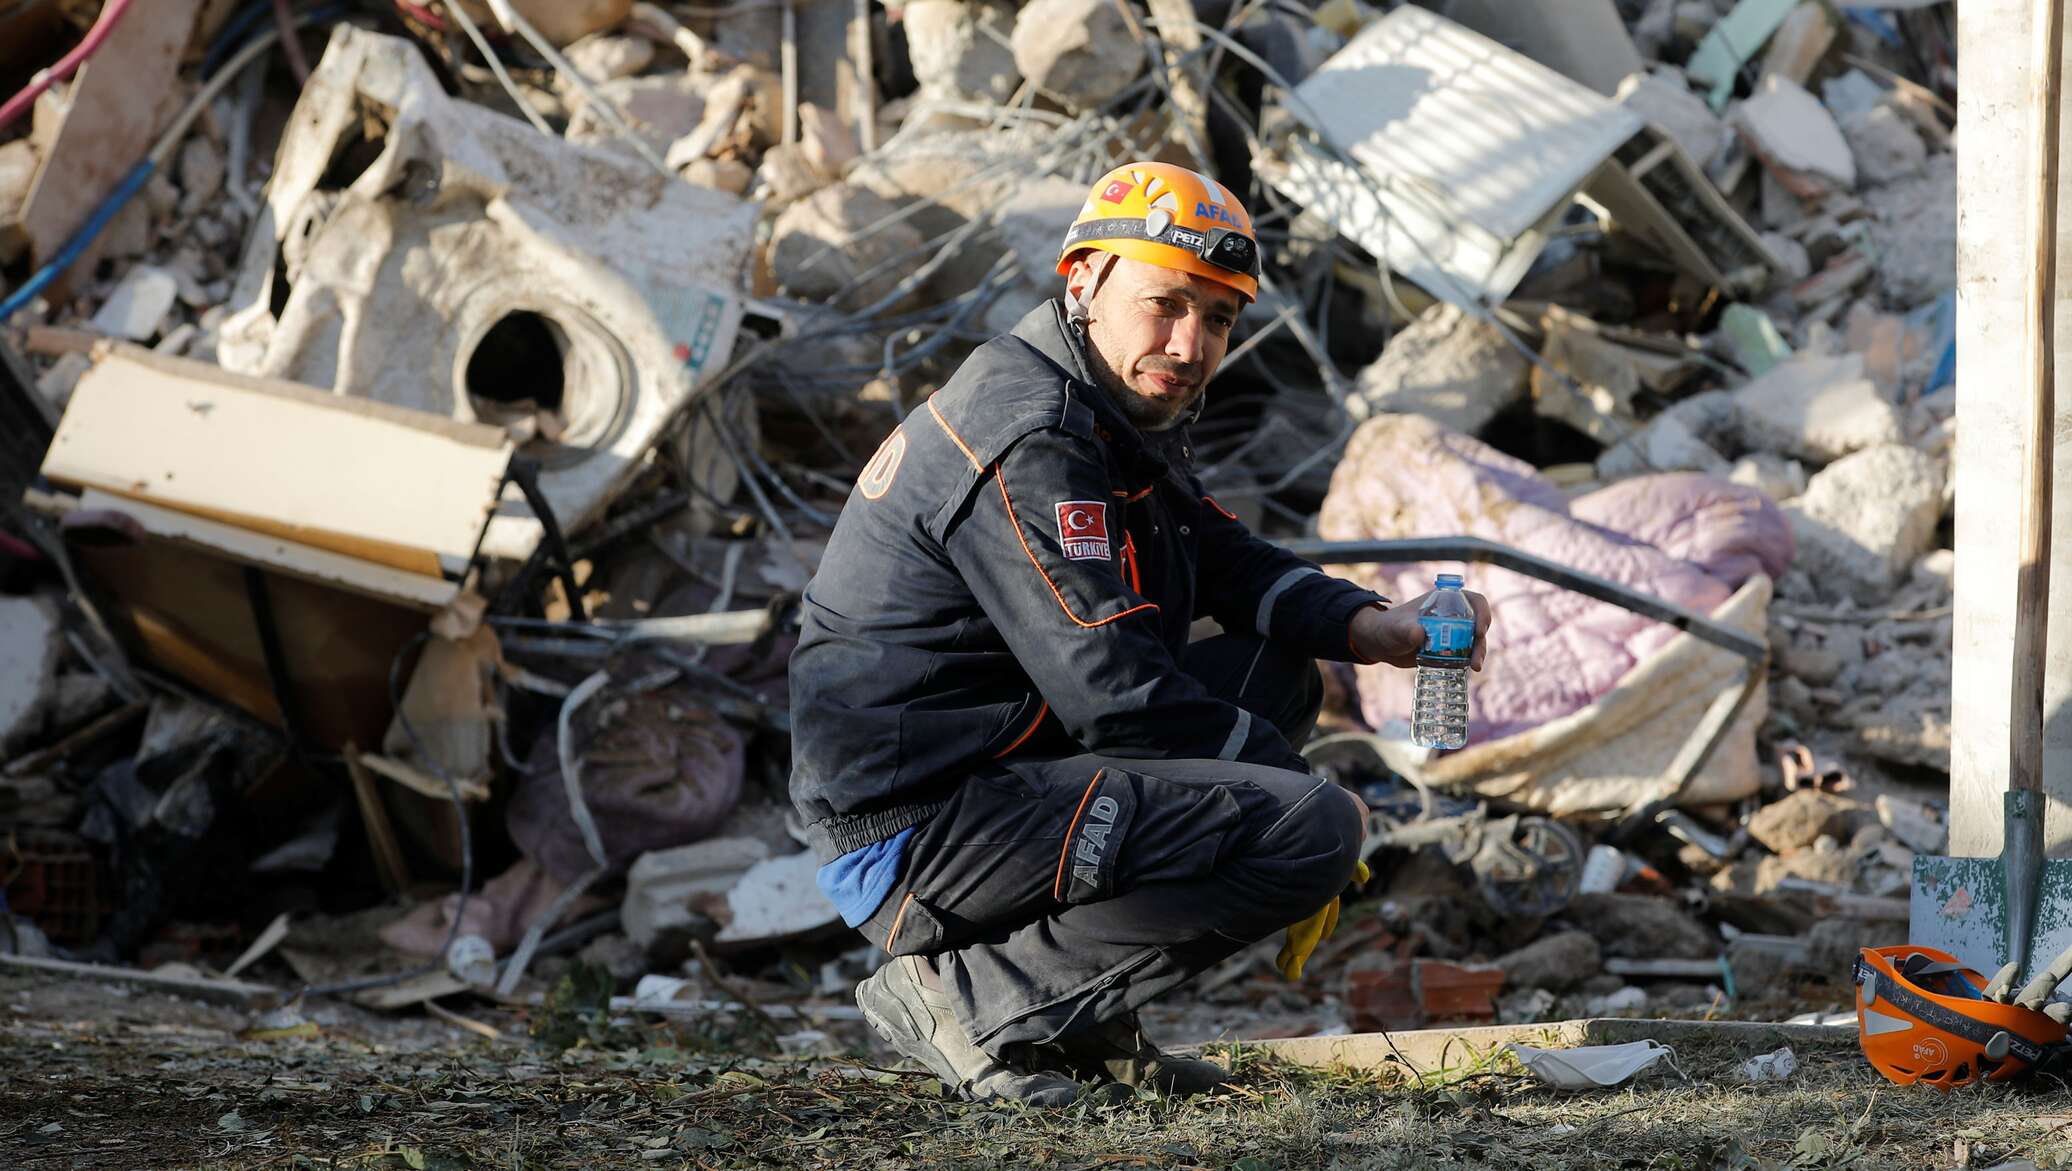 Землетрясение 30. Фото турецкого землетрясения спасателей. Землетрясение в Турции наши спасатели.